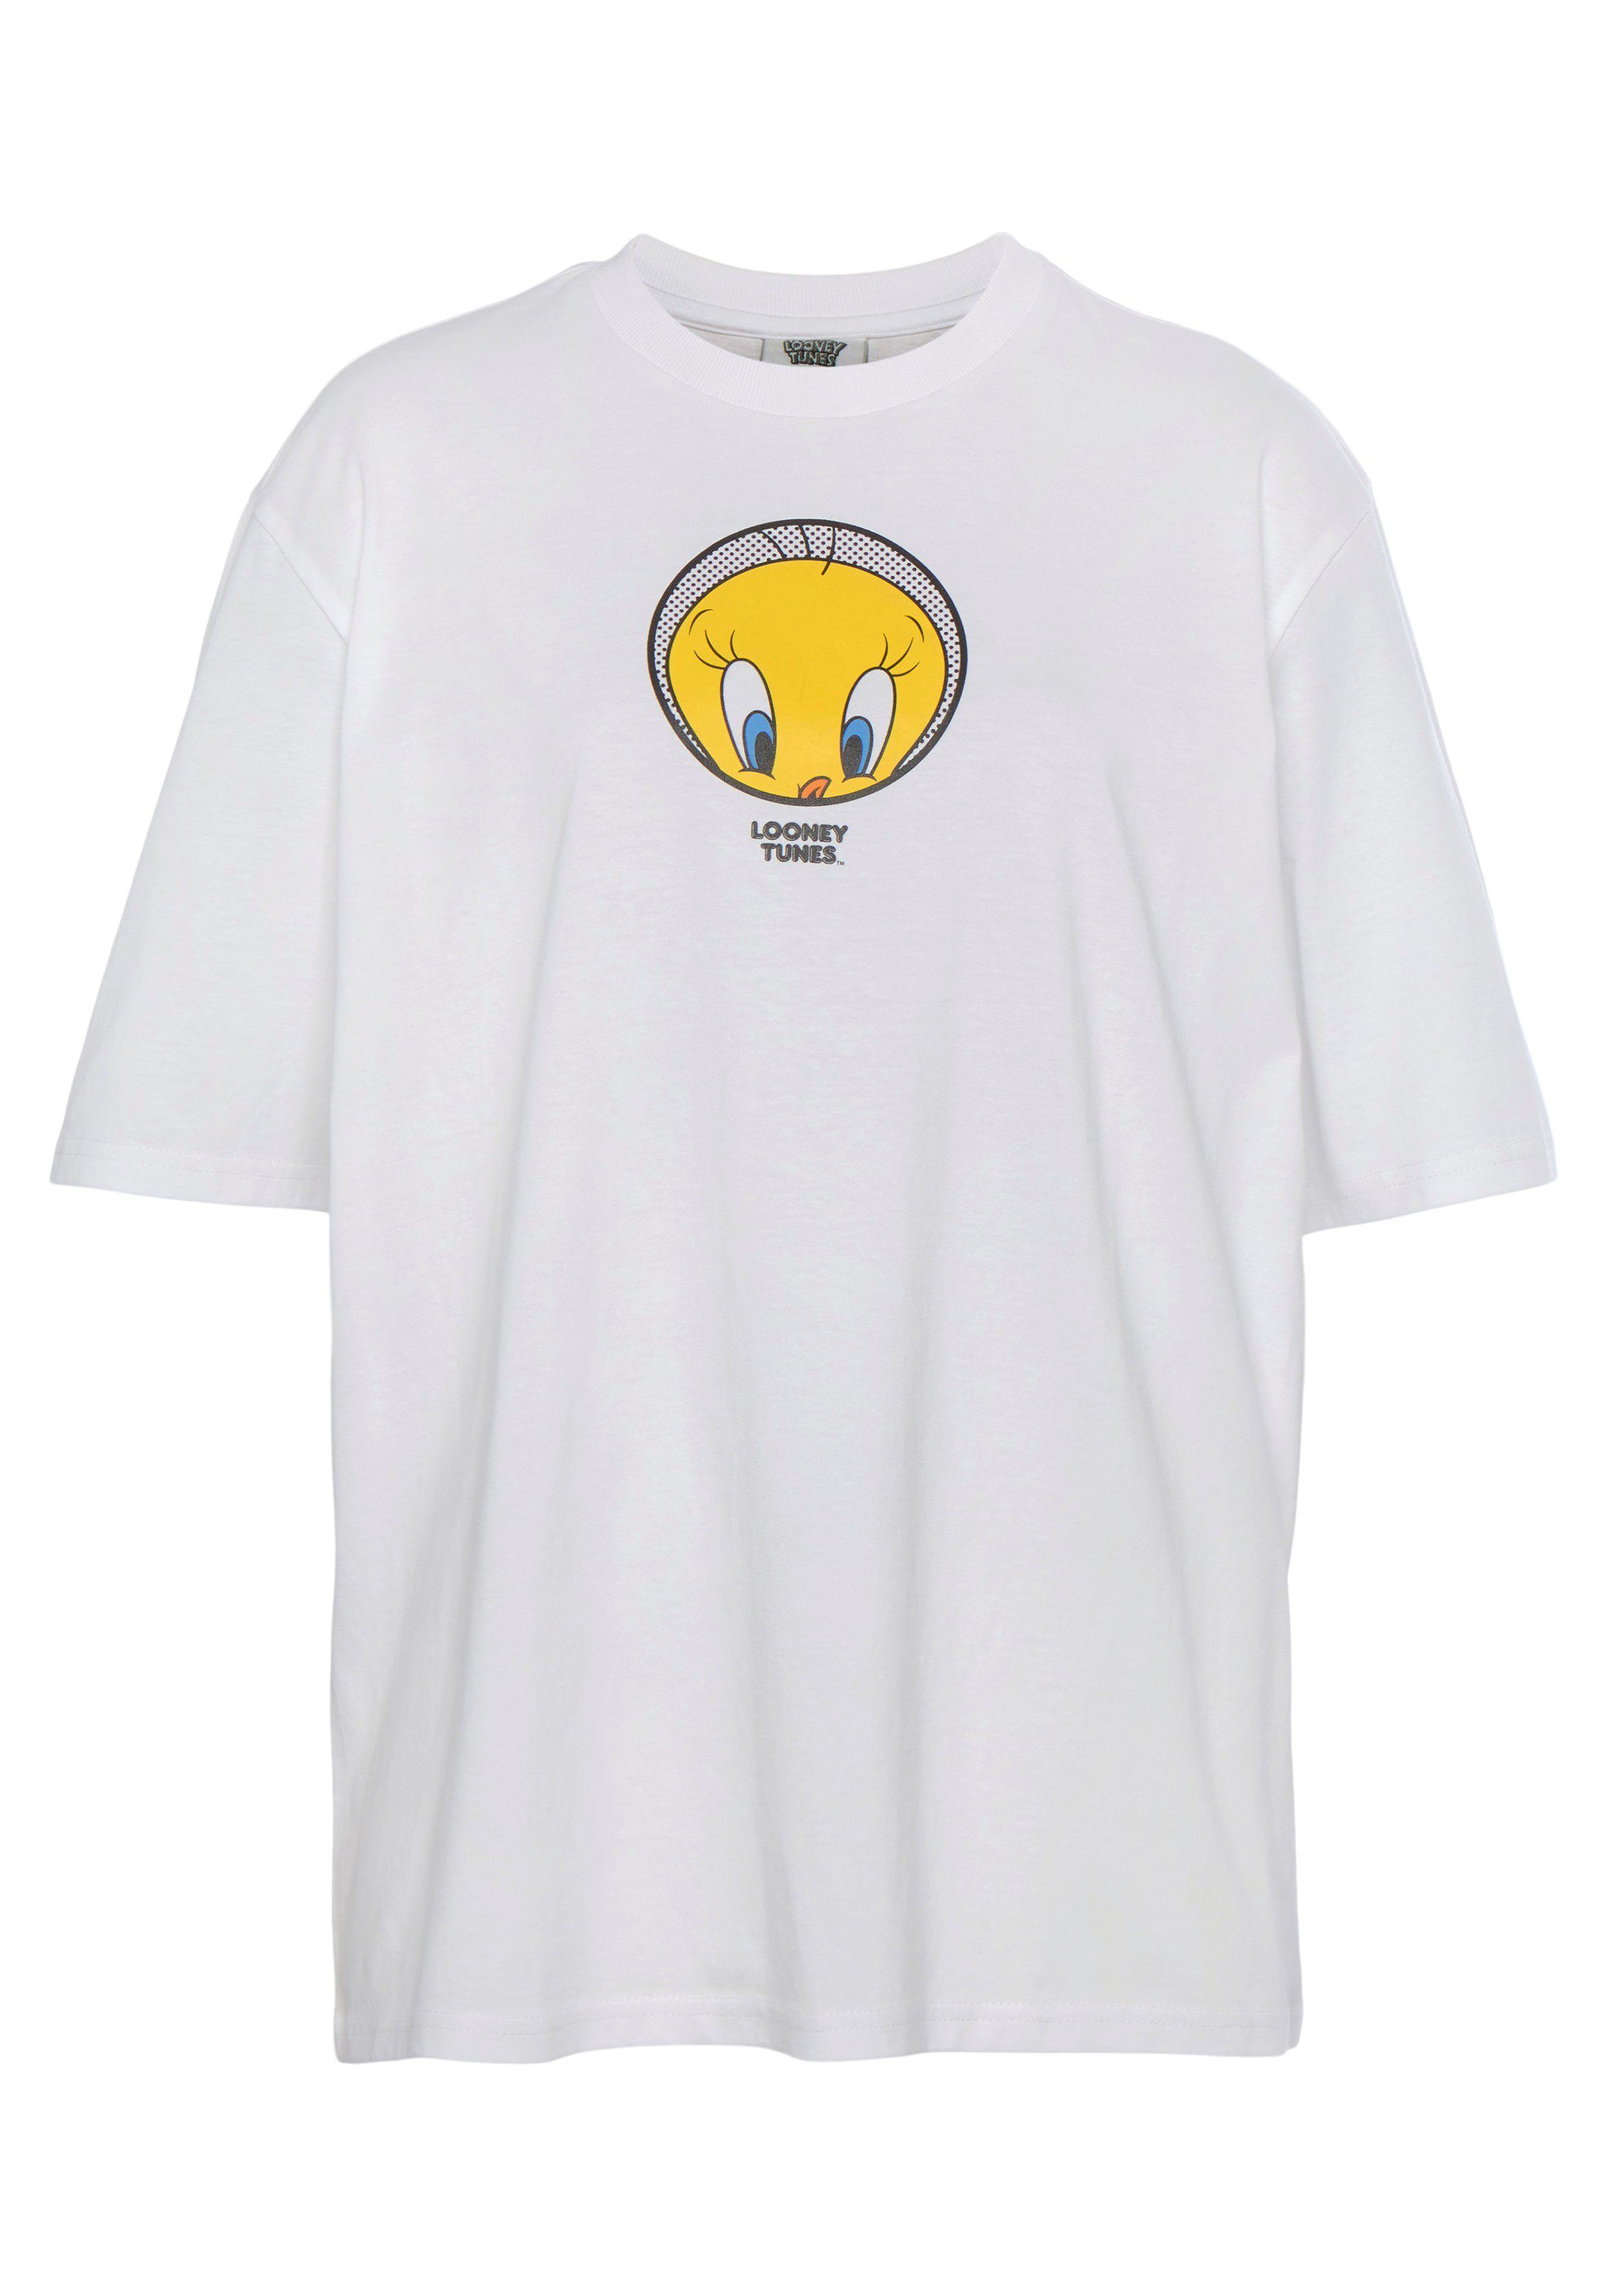 Capelli T-Shirt T-Shirt New white York Tweety